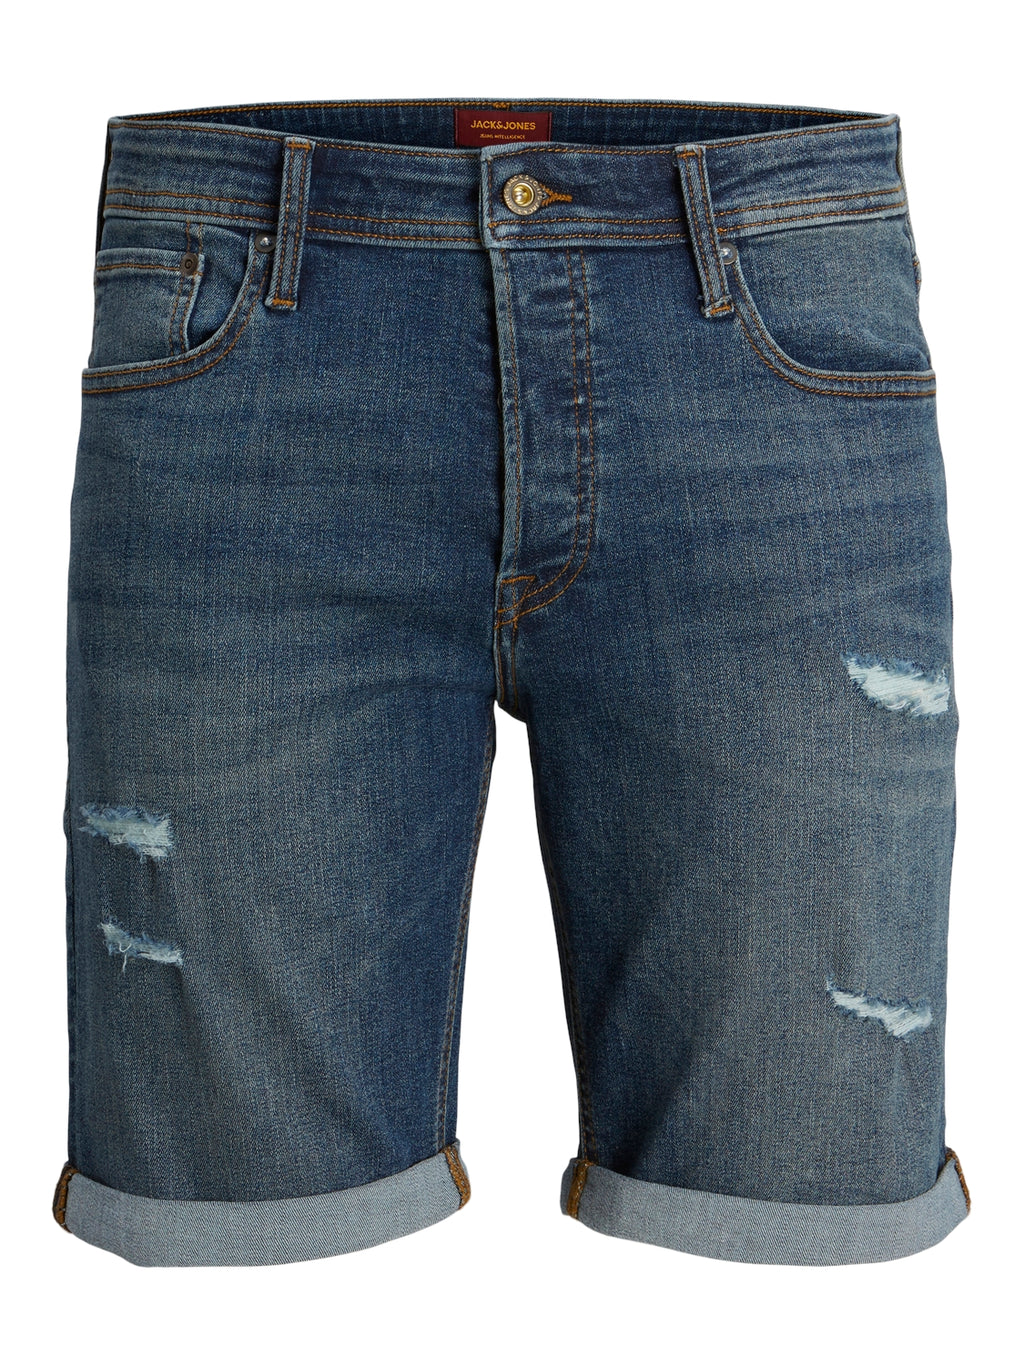 Jack & Jones Rick AM 610 Denim Ripped Distressed Shorts Mid Blue - Raw Menswear